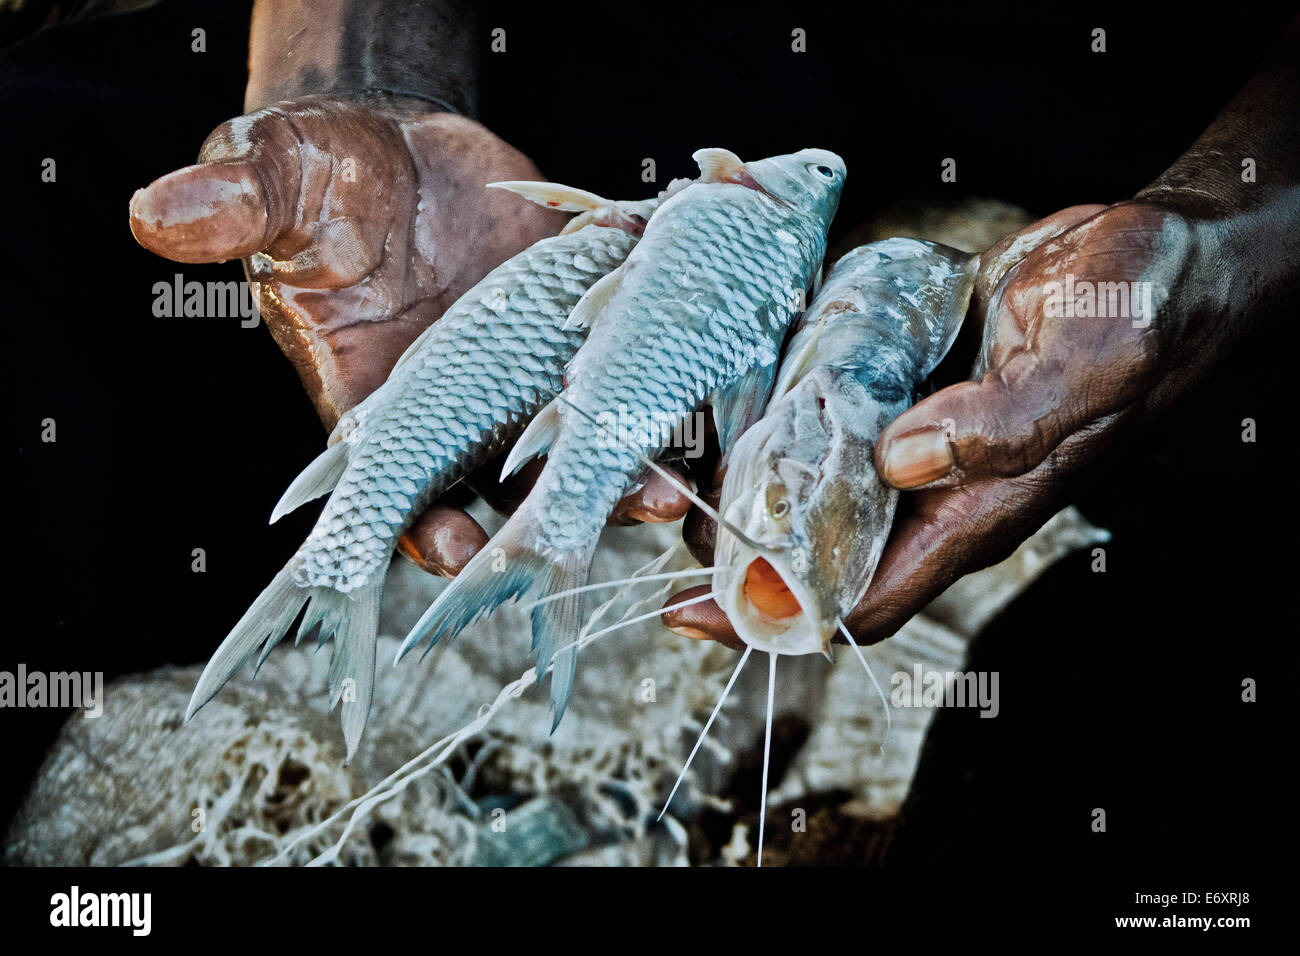 Pescador keniano sosteniendo su captura del día, el Lago Baringo, Kenya, Africa. Foto de stock